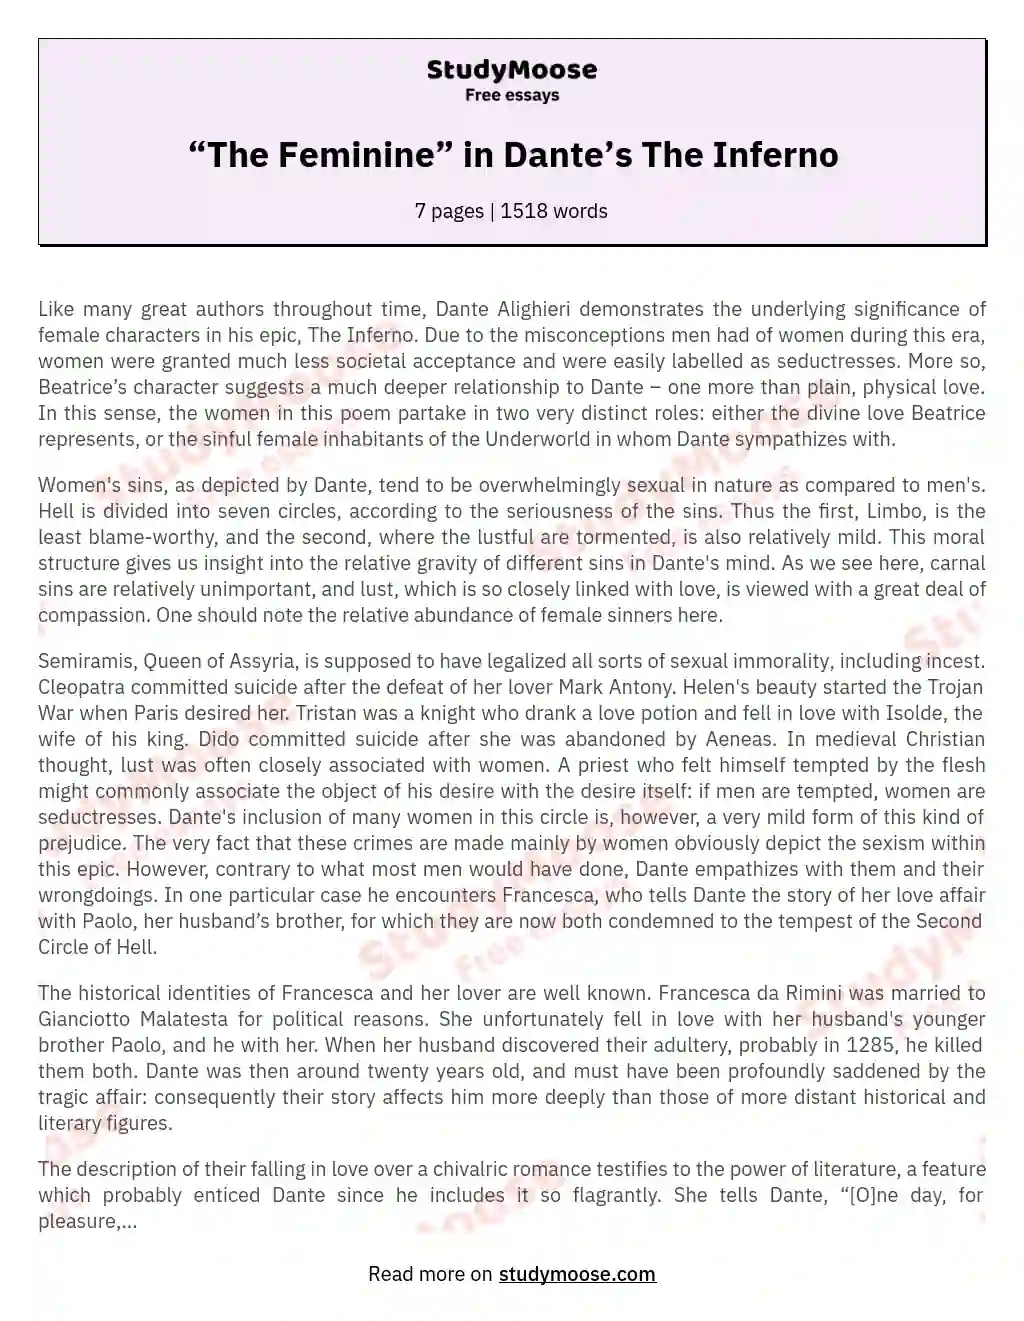 “The Feminine” in Dante’s The Inferno essay